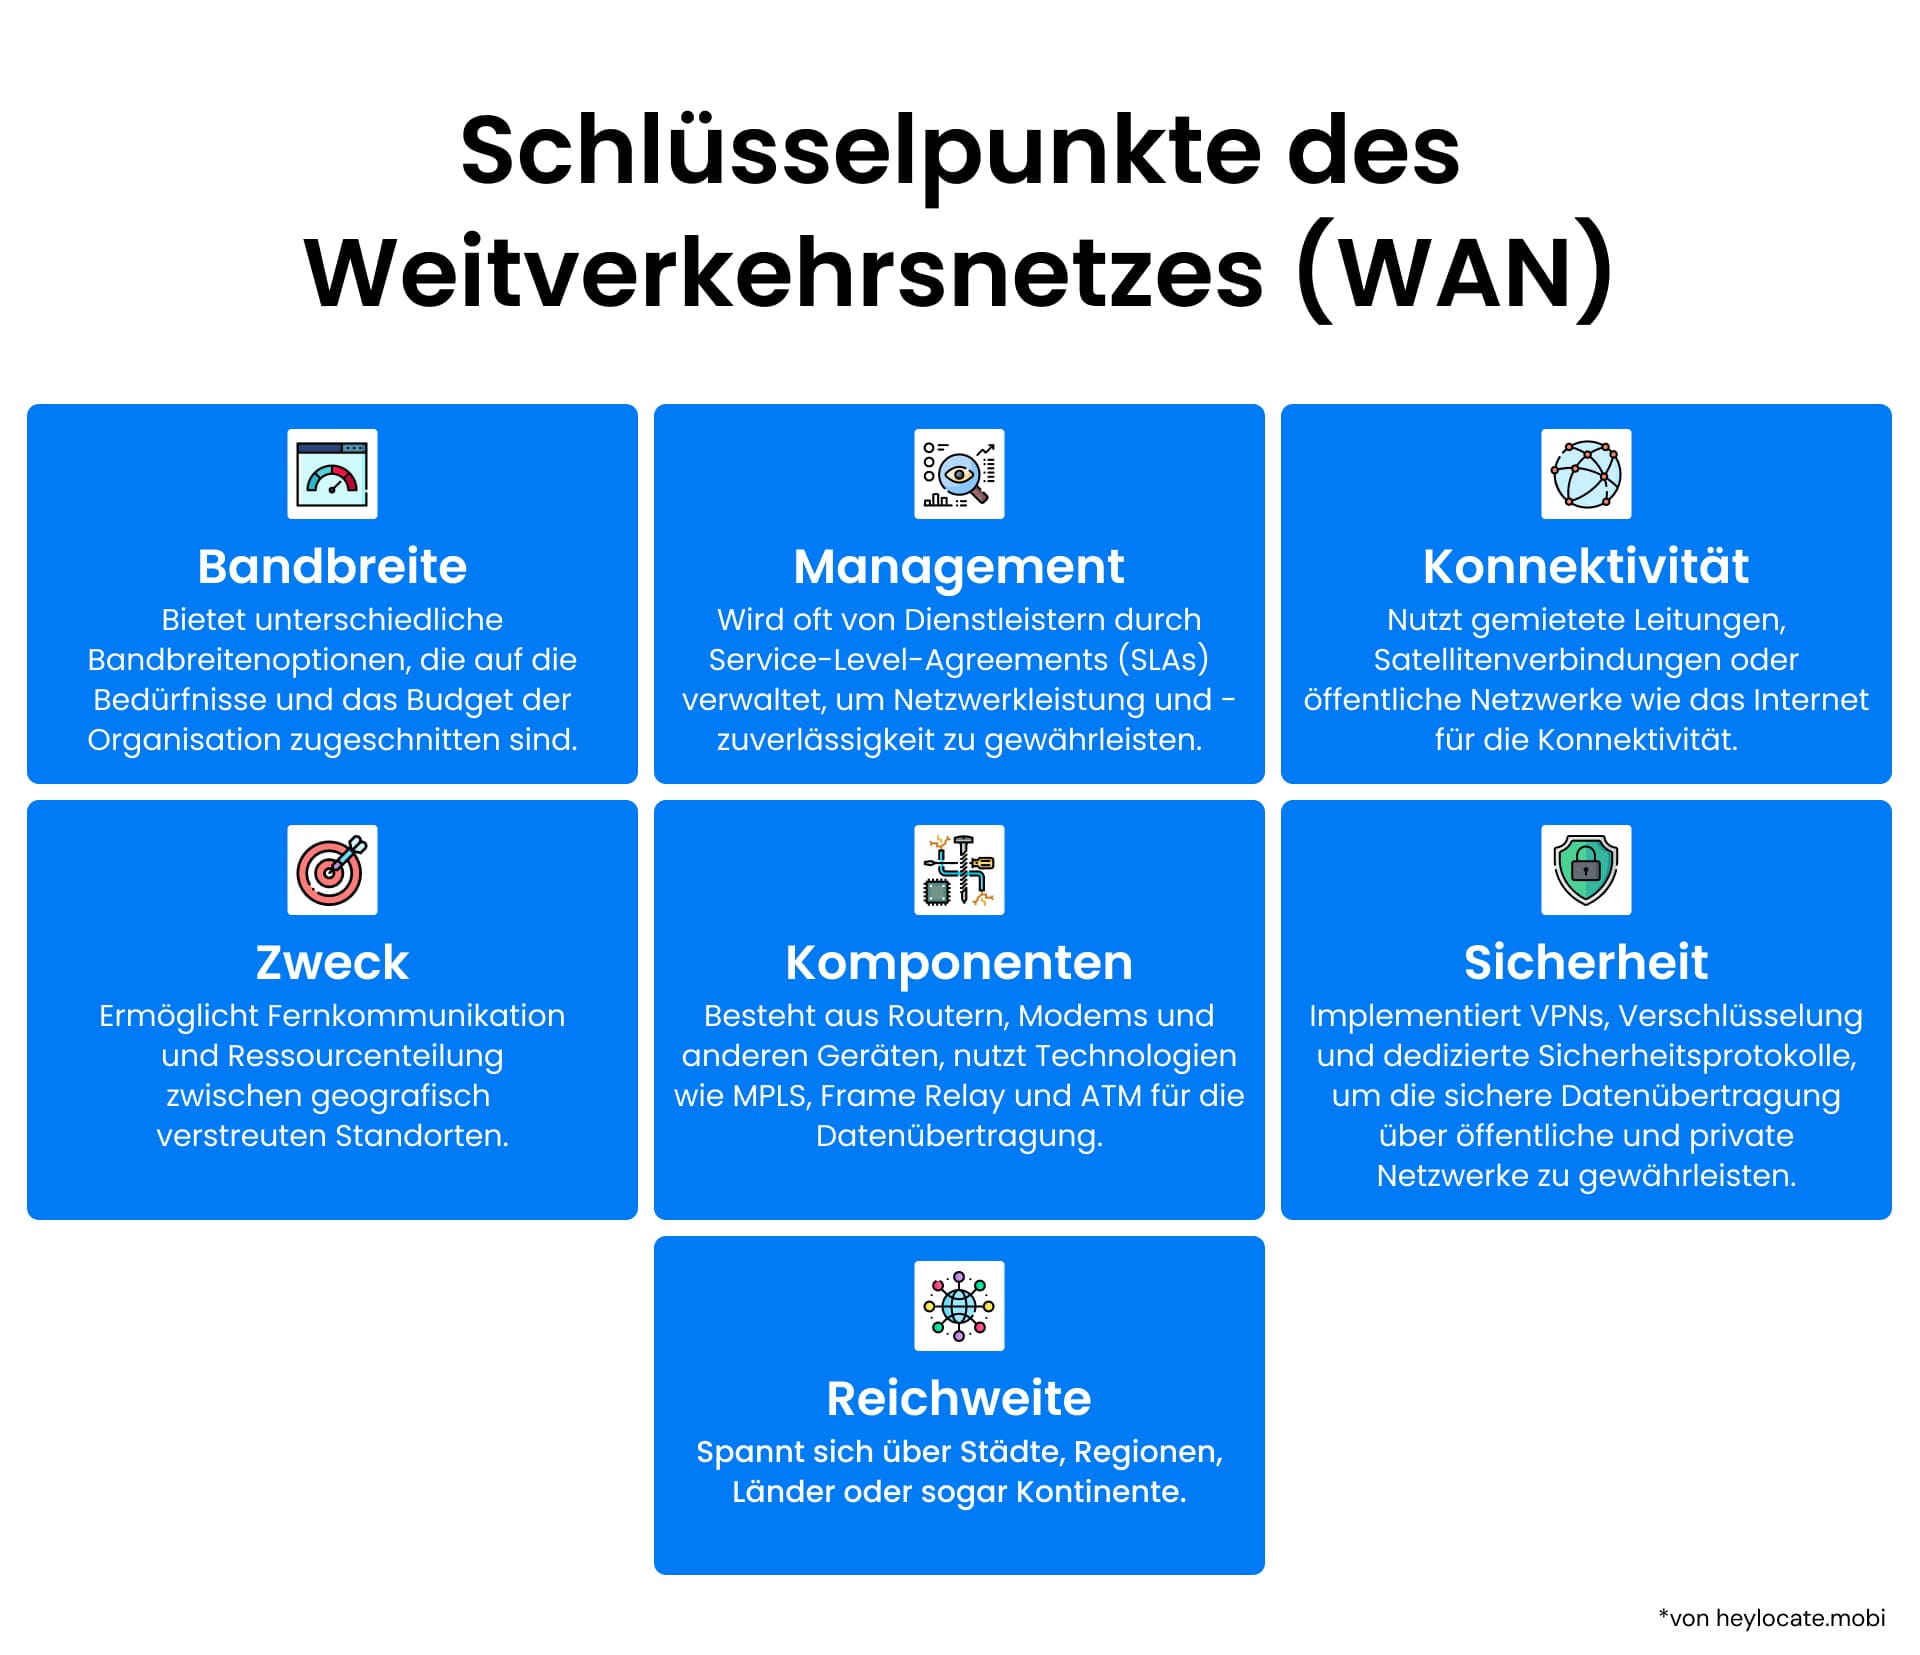 Eine Infografik, die die wichtigsten Aspekte des Wide Area Network (WAN) hervorhebt, einschließlich Sicherheit, Komponenten, Management, Konnektivität, Bandbreite, Reichweite und Zweck